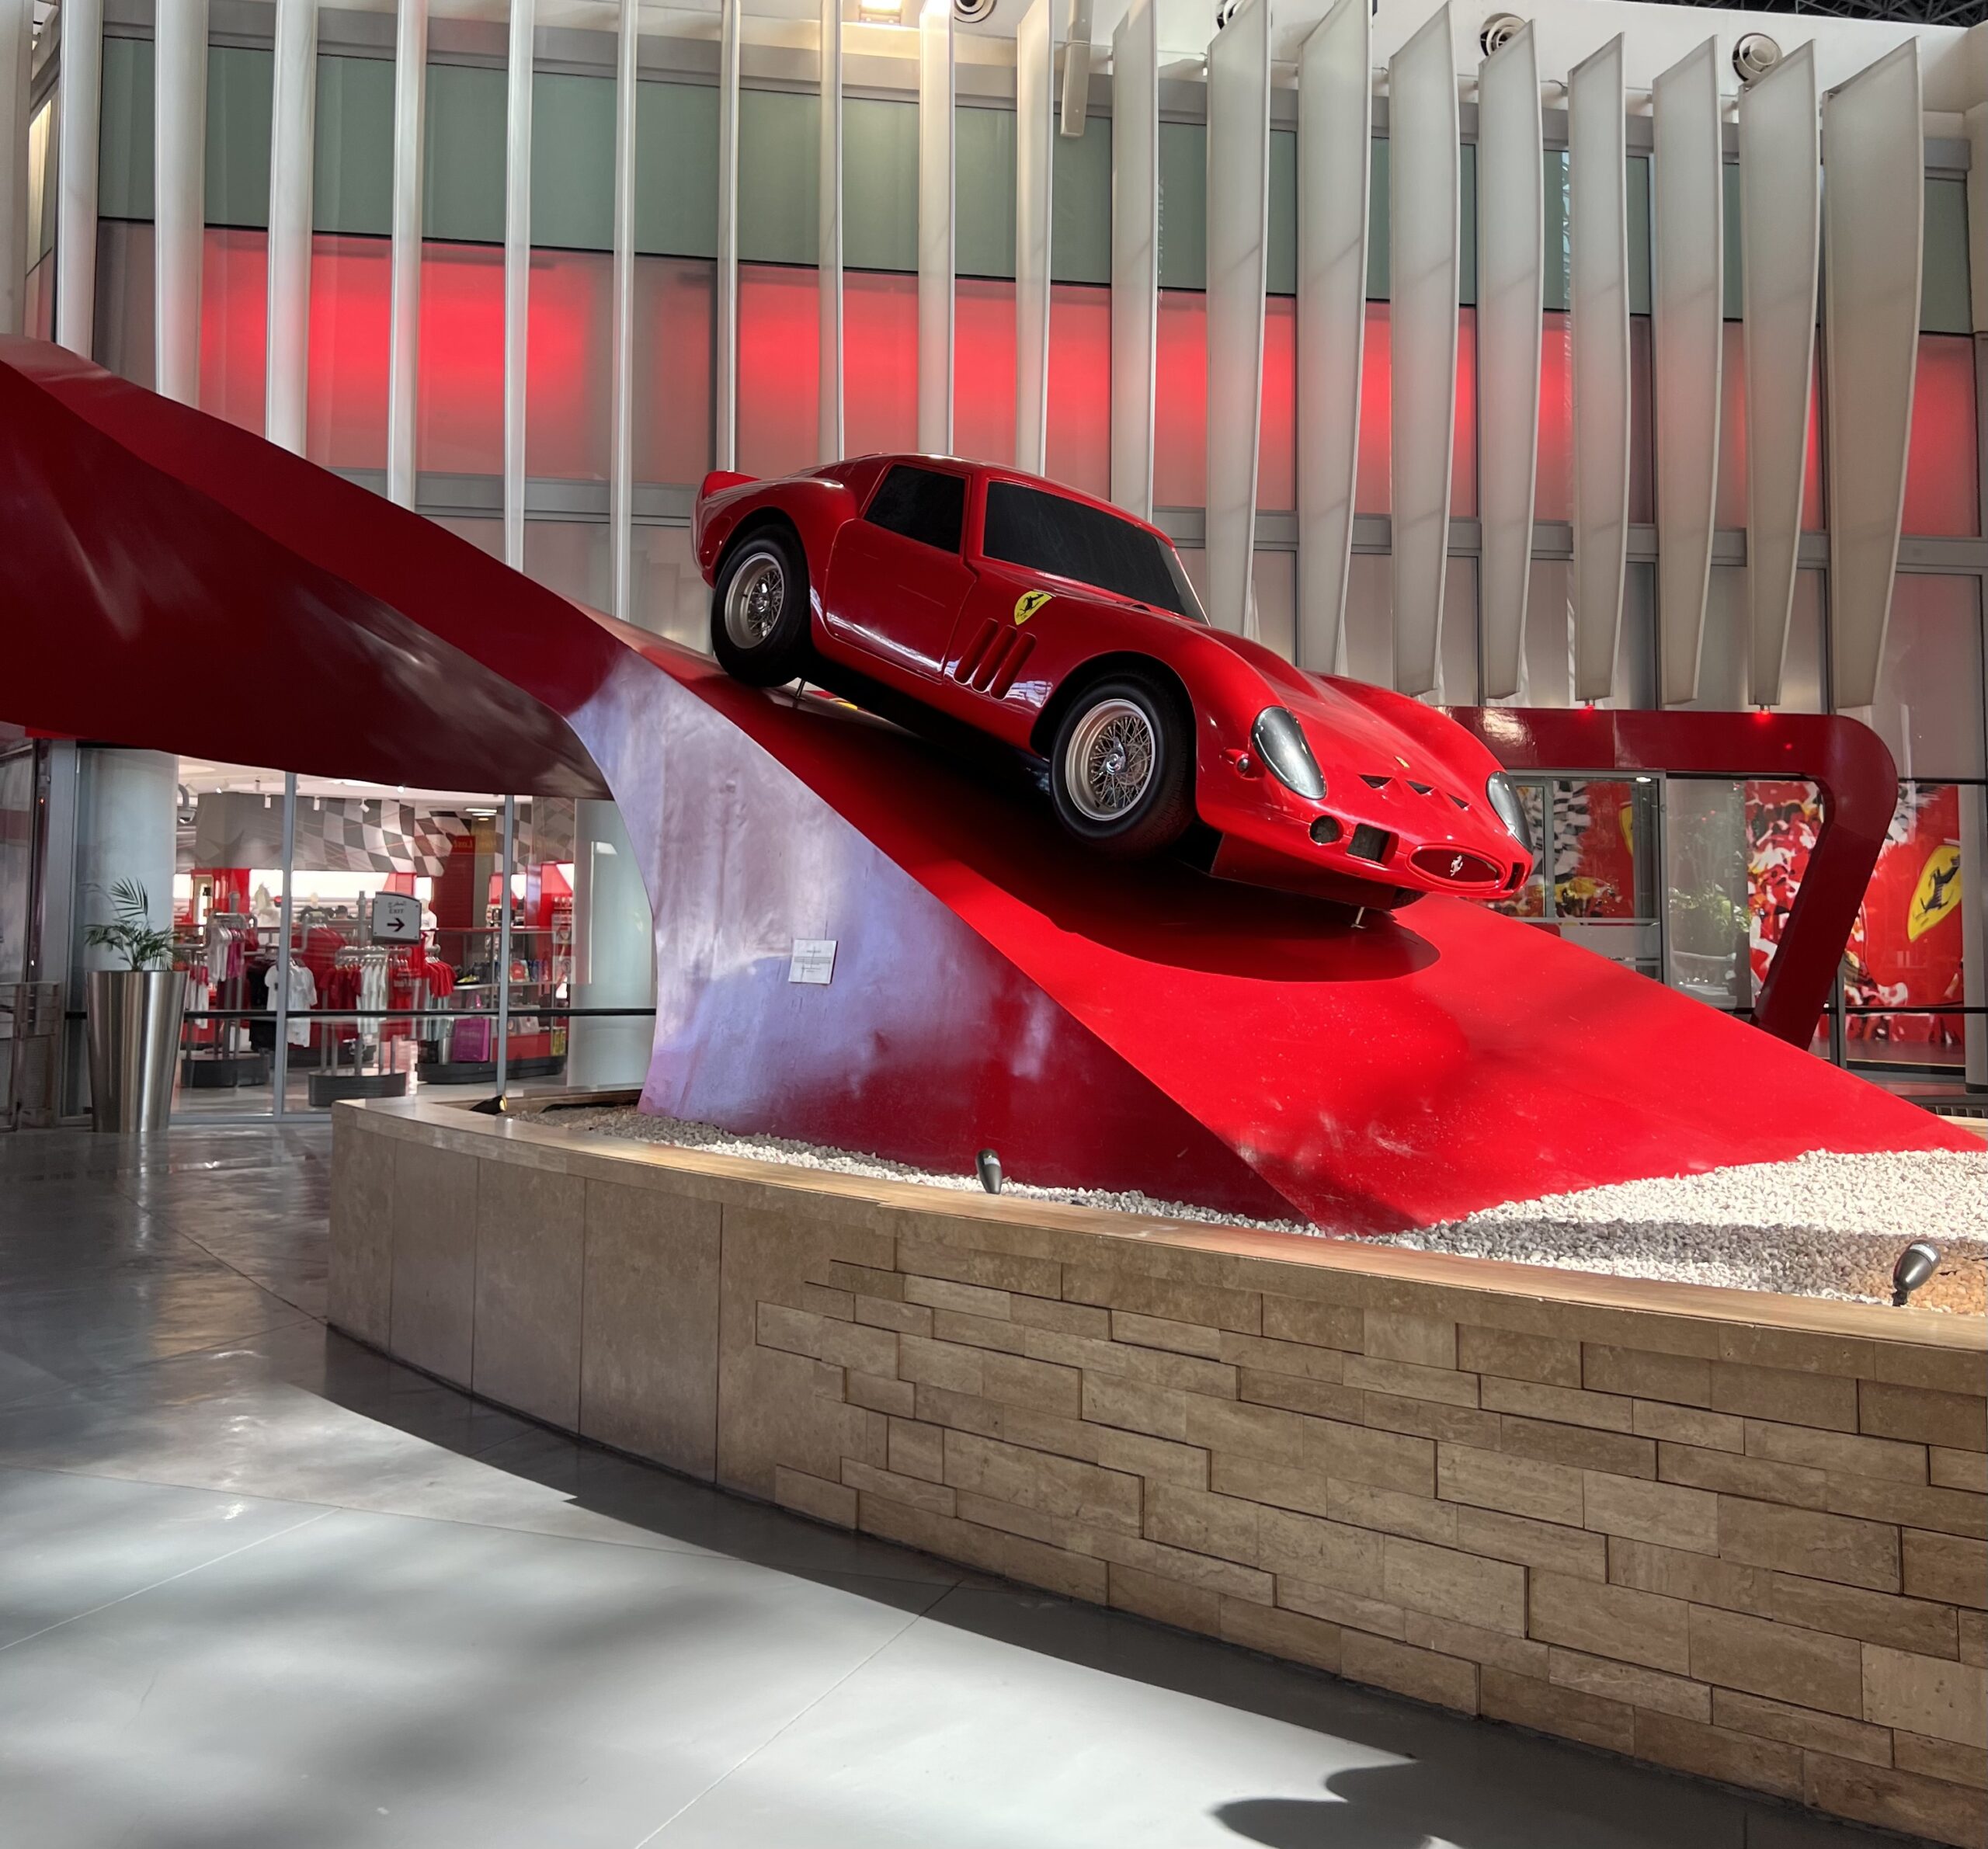 Conheça o Ferrari World, localizado em Abu Dhabi